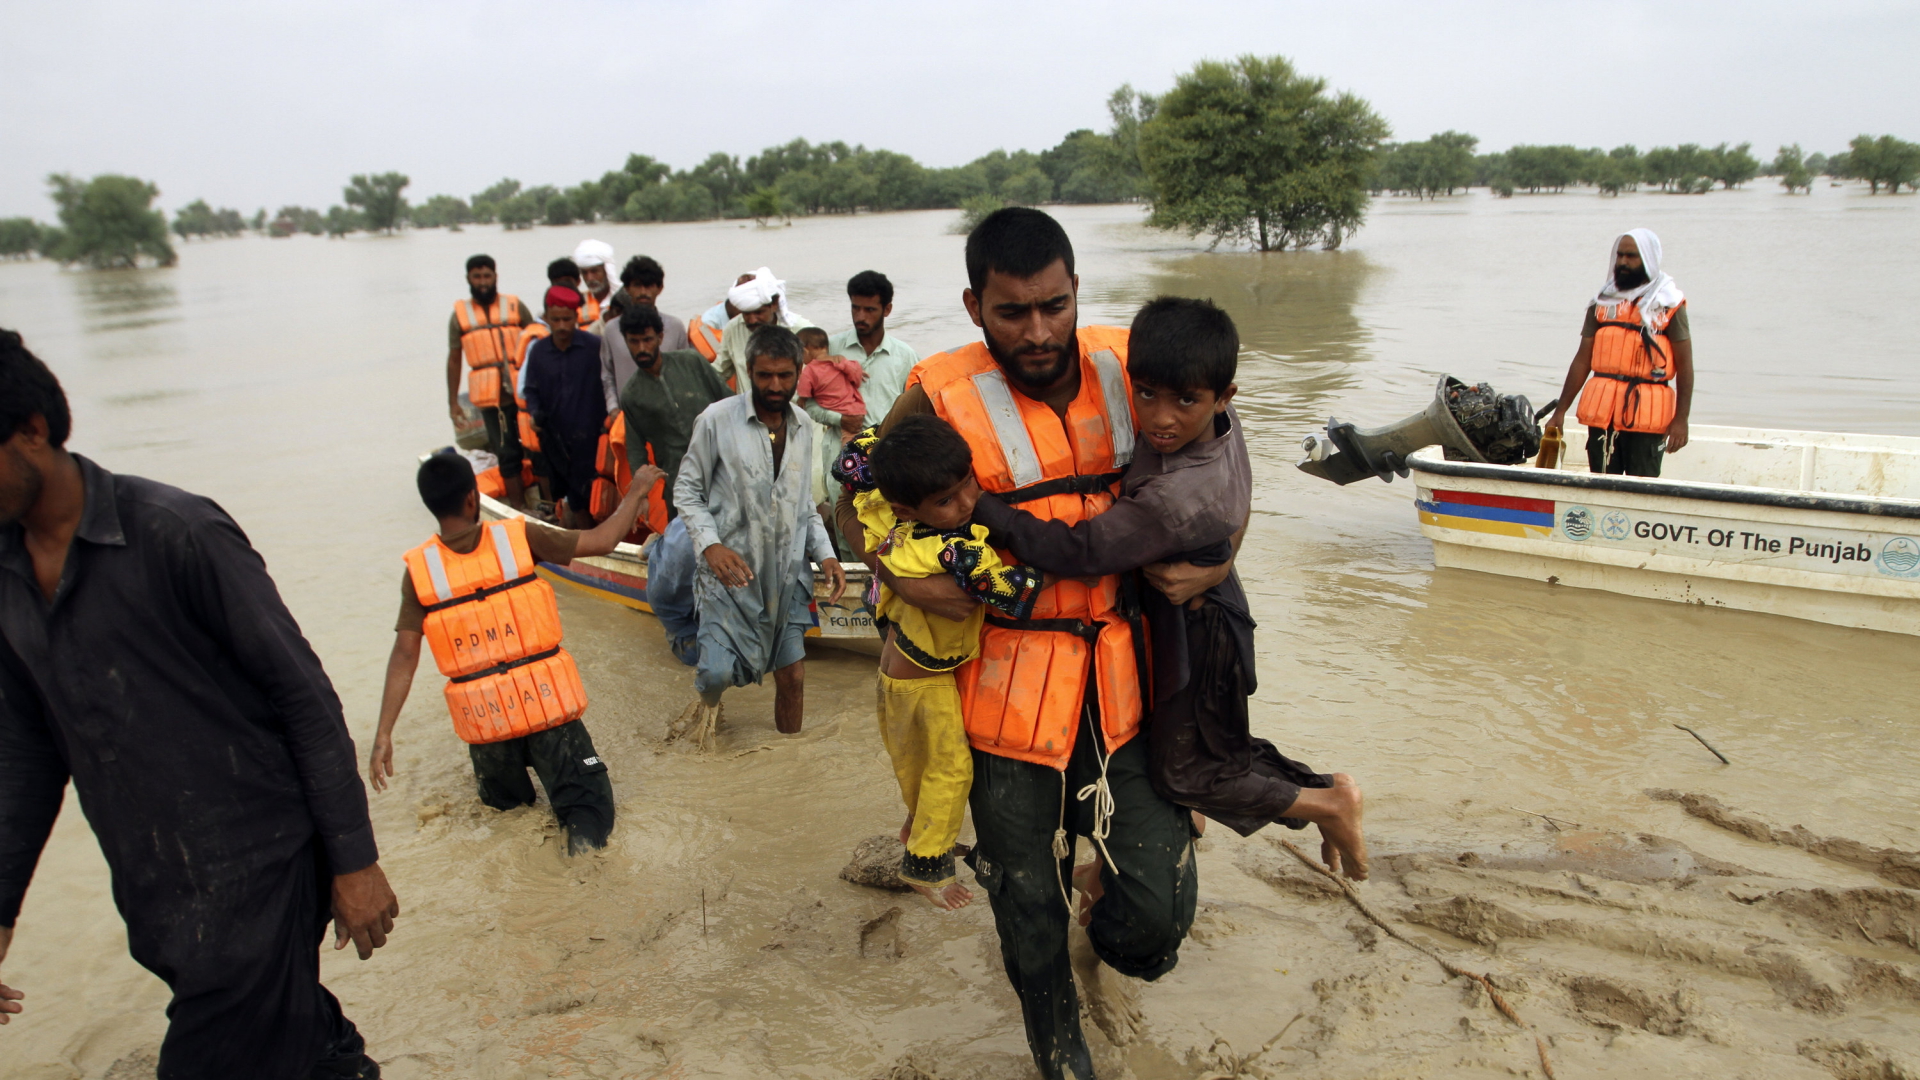 Armeeangehörige evakuieren Menschen aus einem überschwemmten Gebiet im pakistanischen Rajanpur. | AP